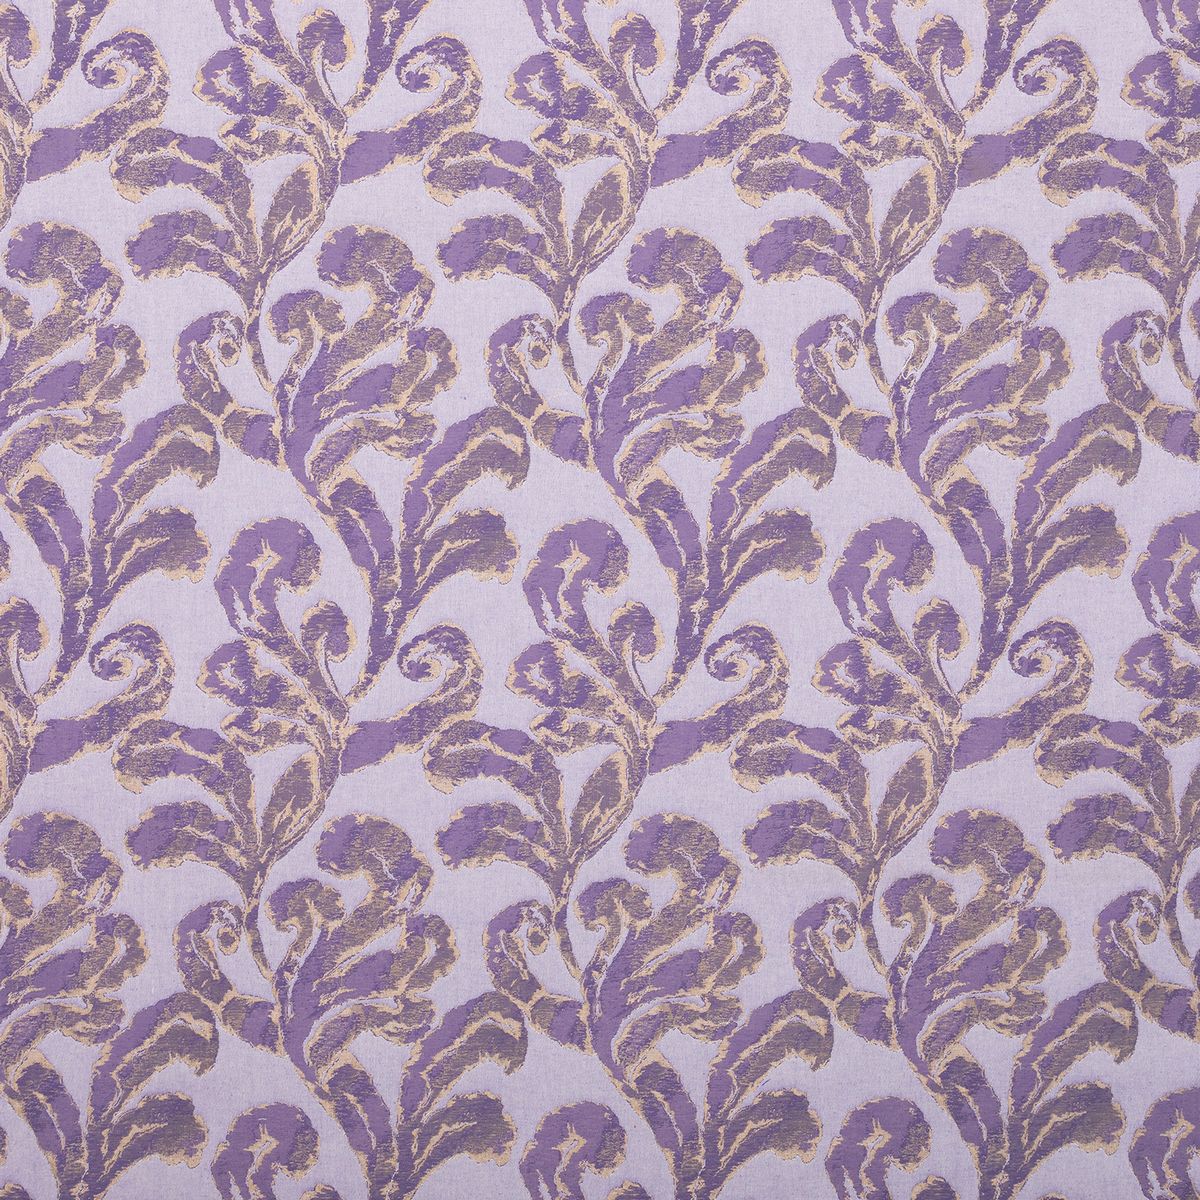 Emington Violet Fabric by Voyage Maison